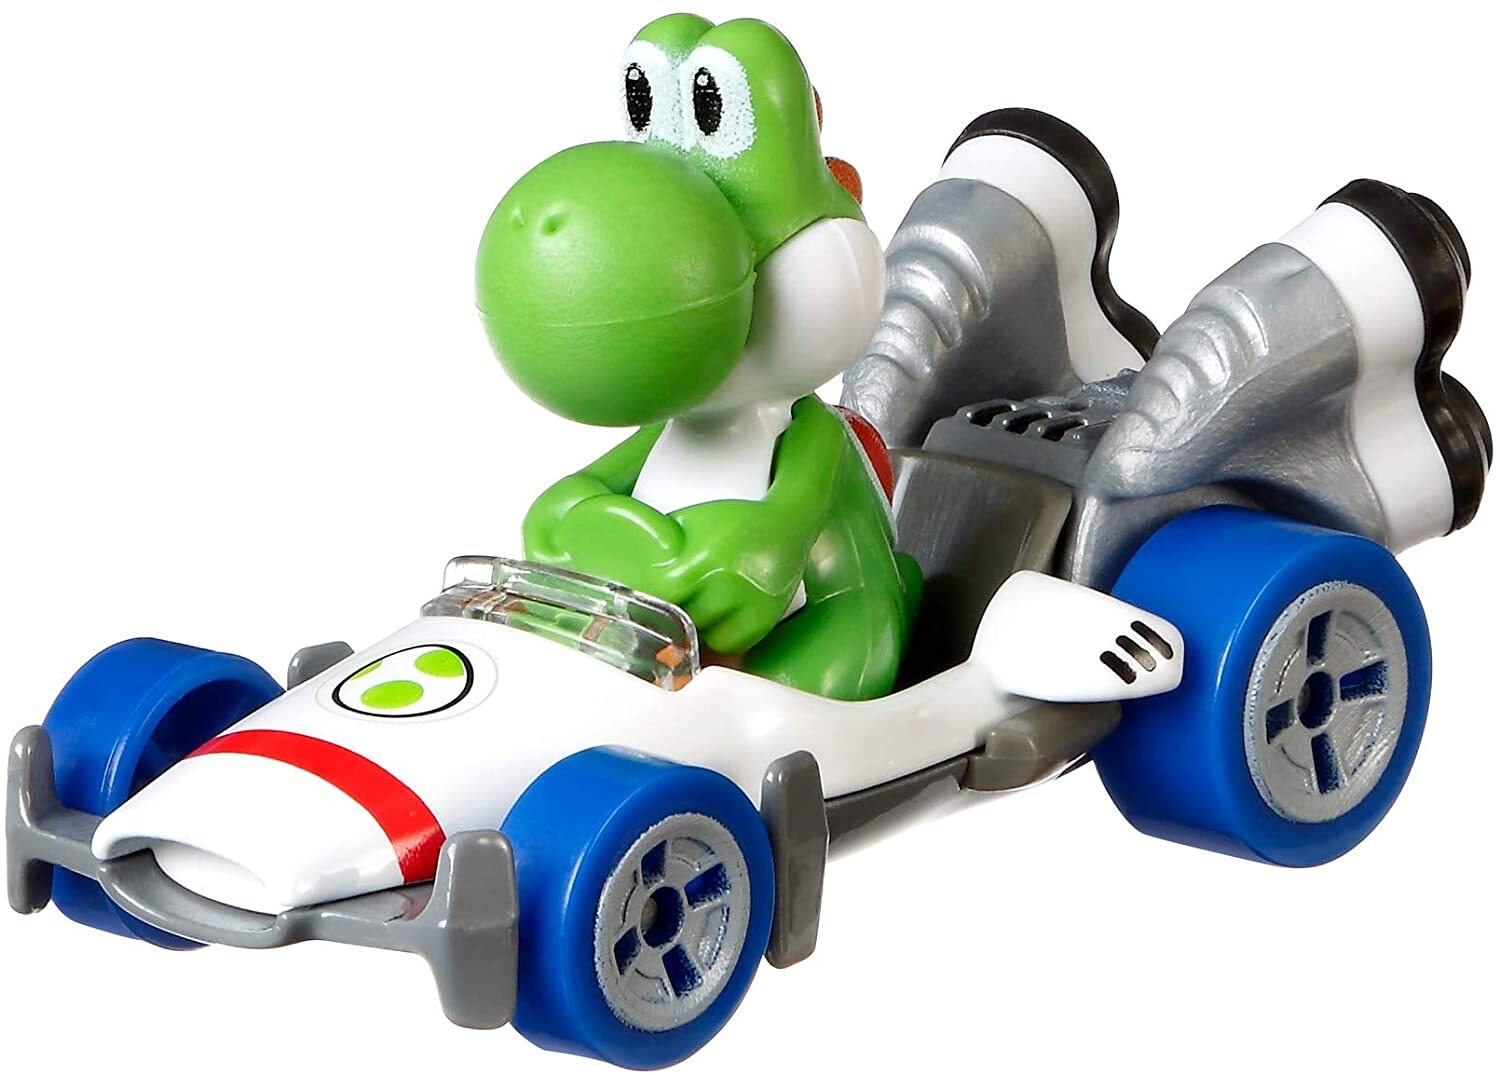 Hot Wheels Mario Kart Hot Wheels Mario Kart Replica Die-cast Asst. Yoshi, B Dasher